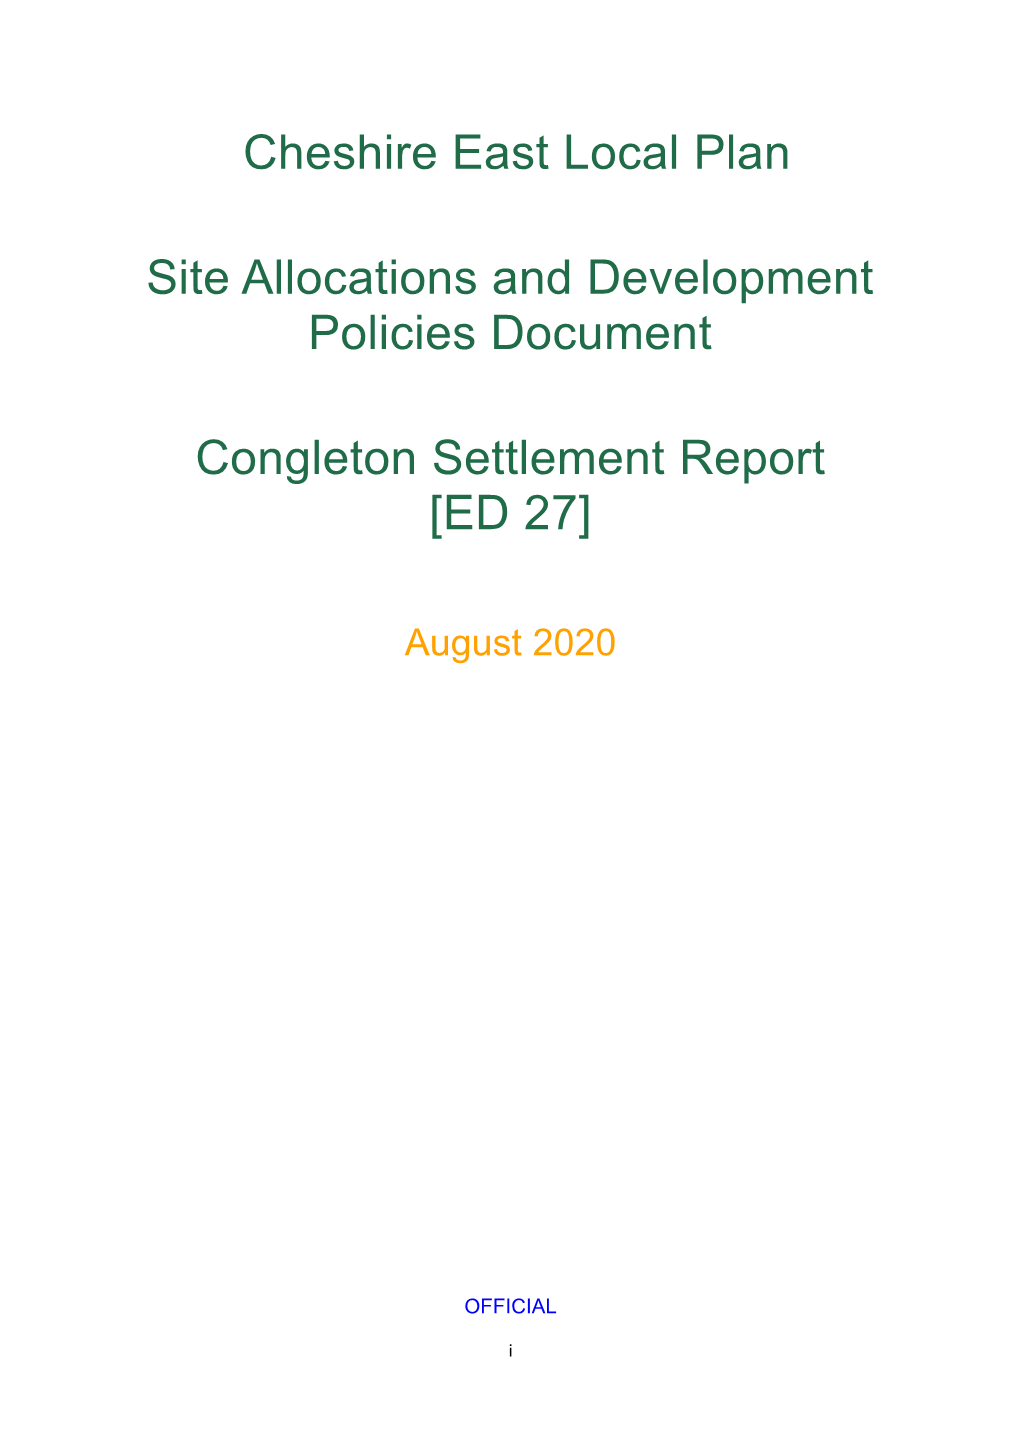 Congleton Settlement Report [ED 27]